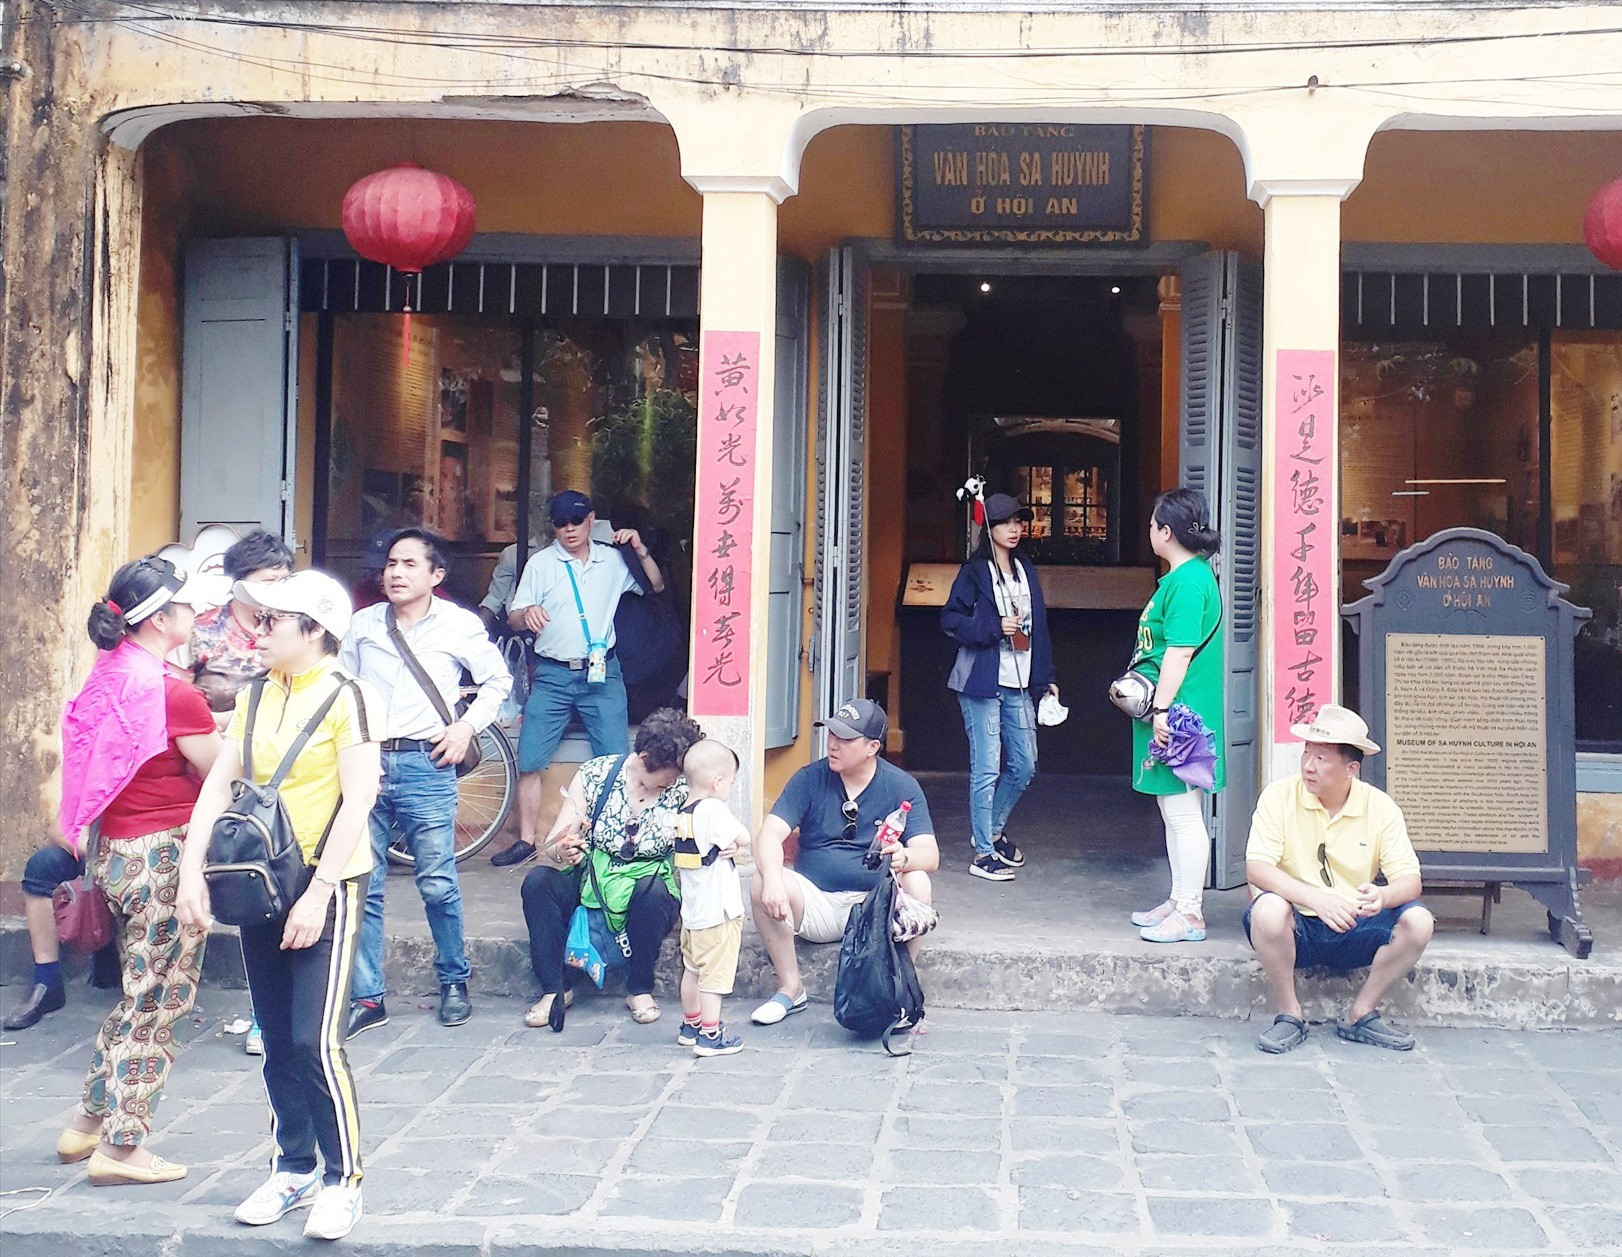 Bảo tàng văn hóa Sa huỳnh ở Hội An thu hút đông đảo du khách đến tham quan, tìm hiểu.